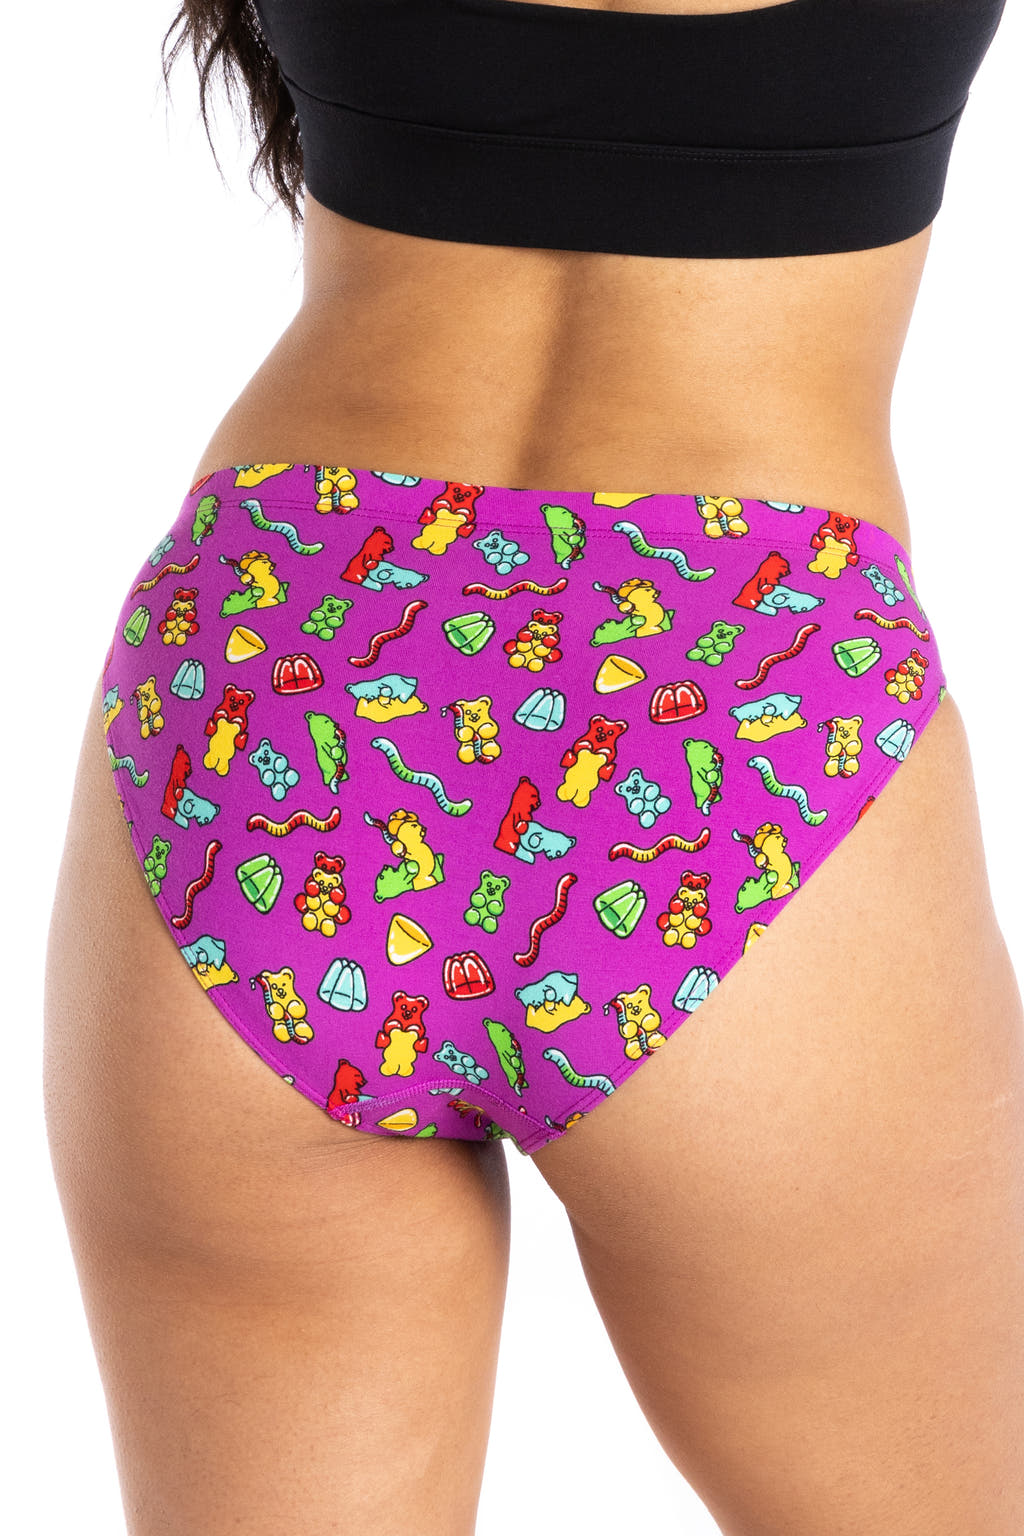 Gummy bear bikini underwear